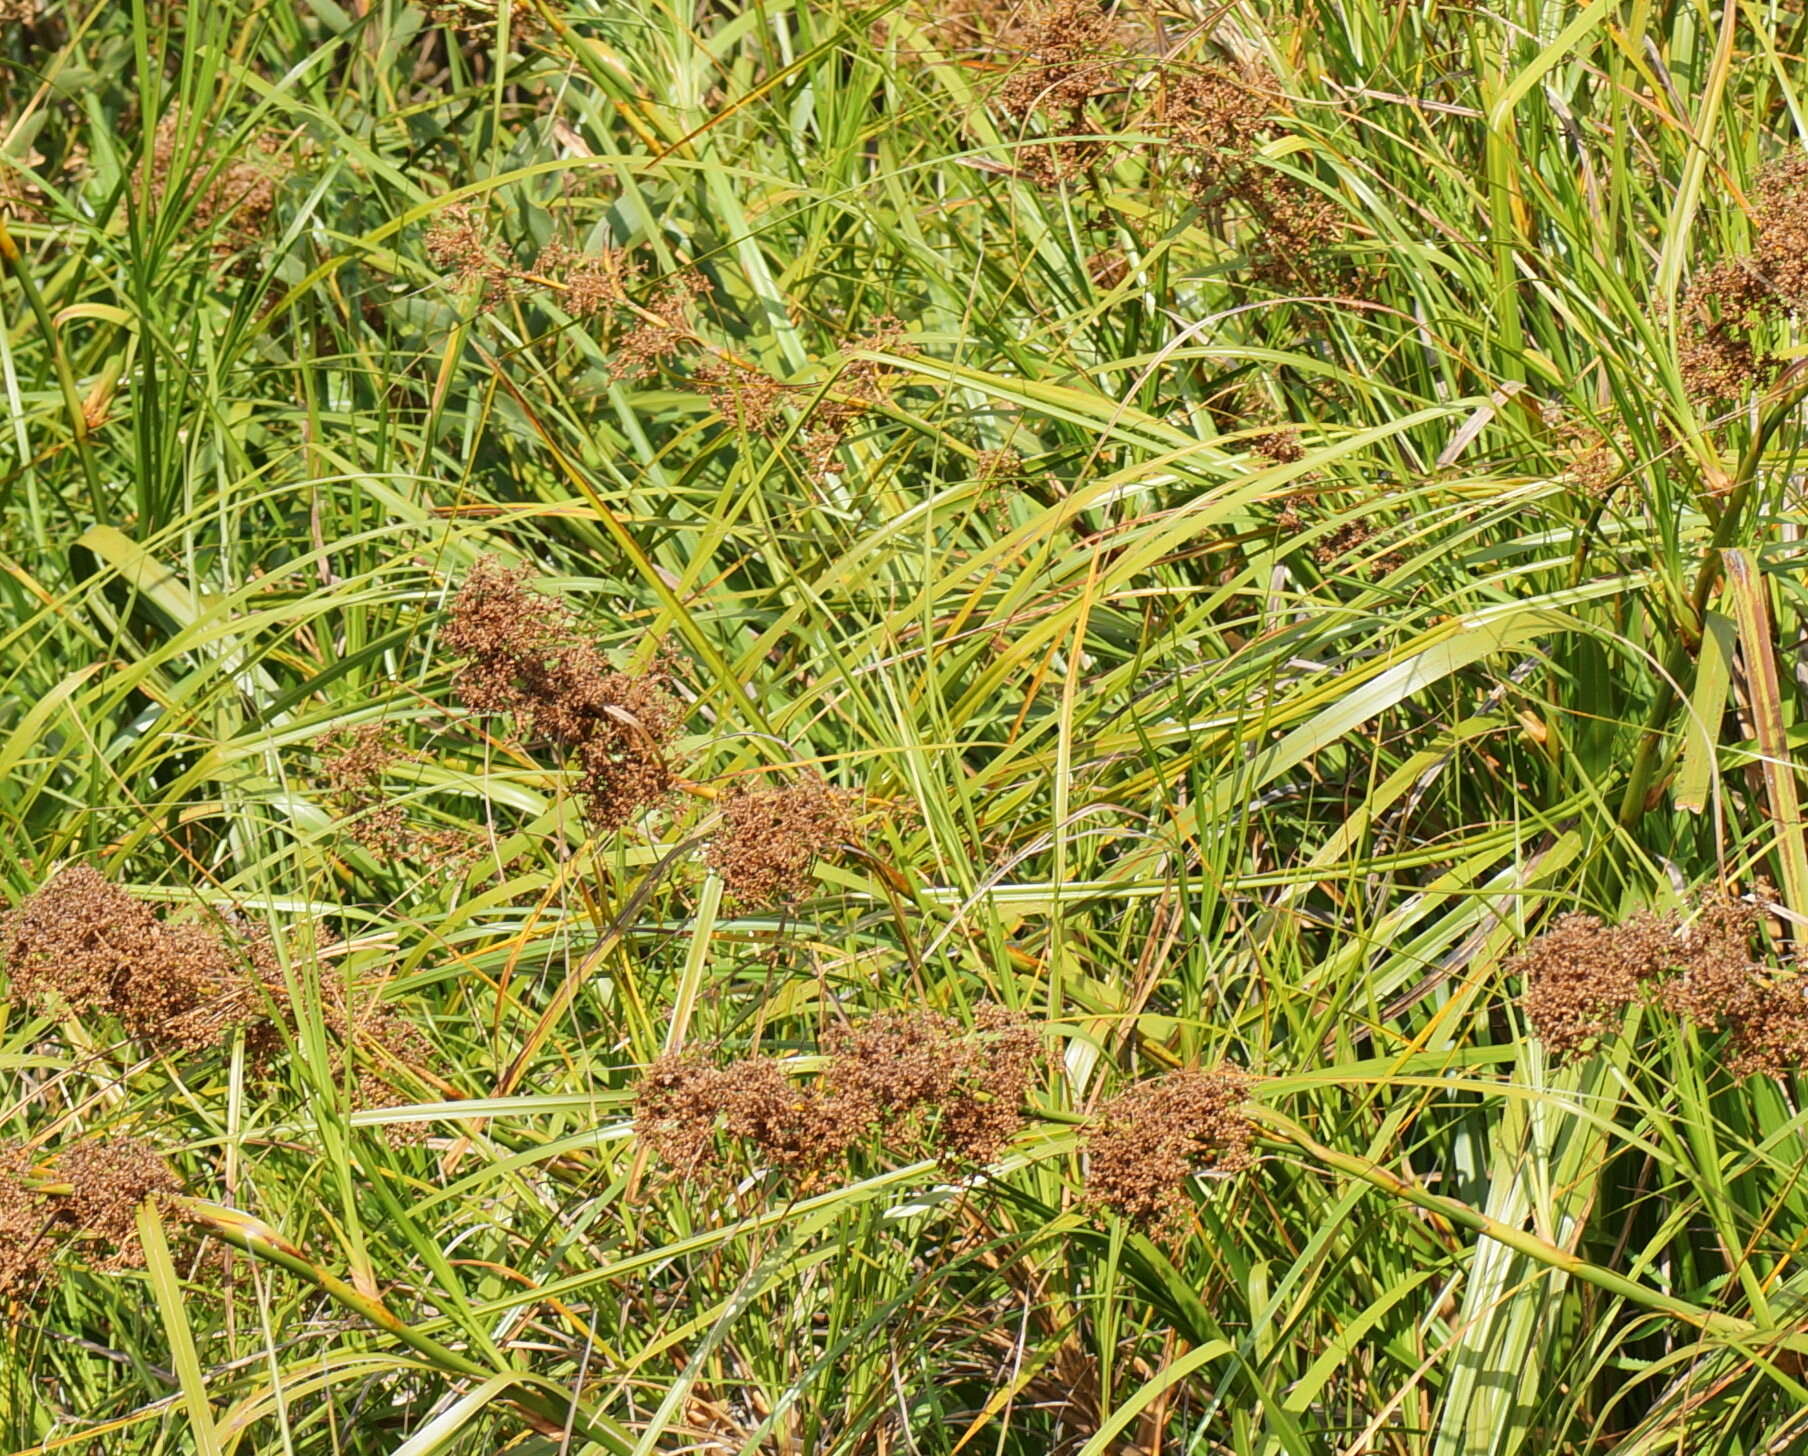 Image of Cladium mariscus subsp. intermedium Kük.